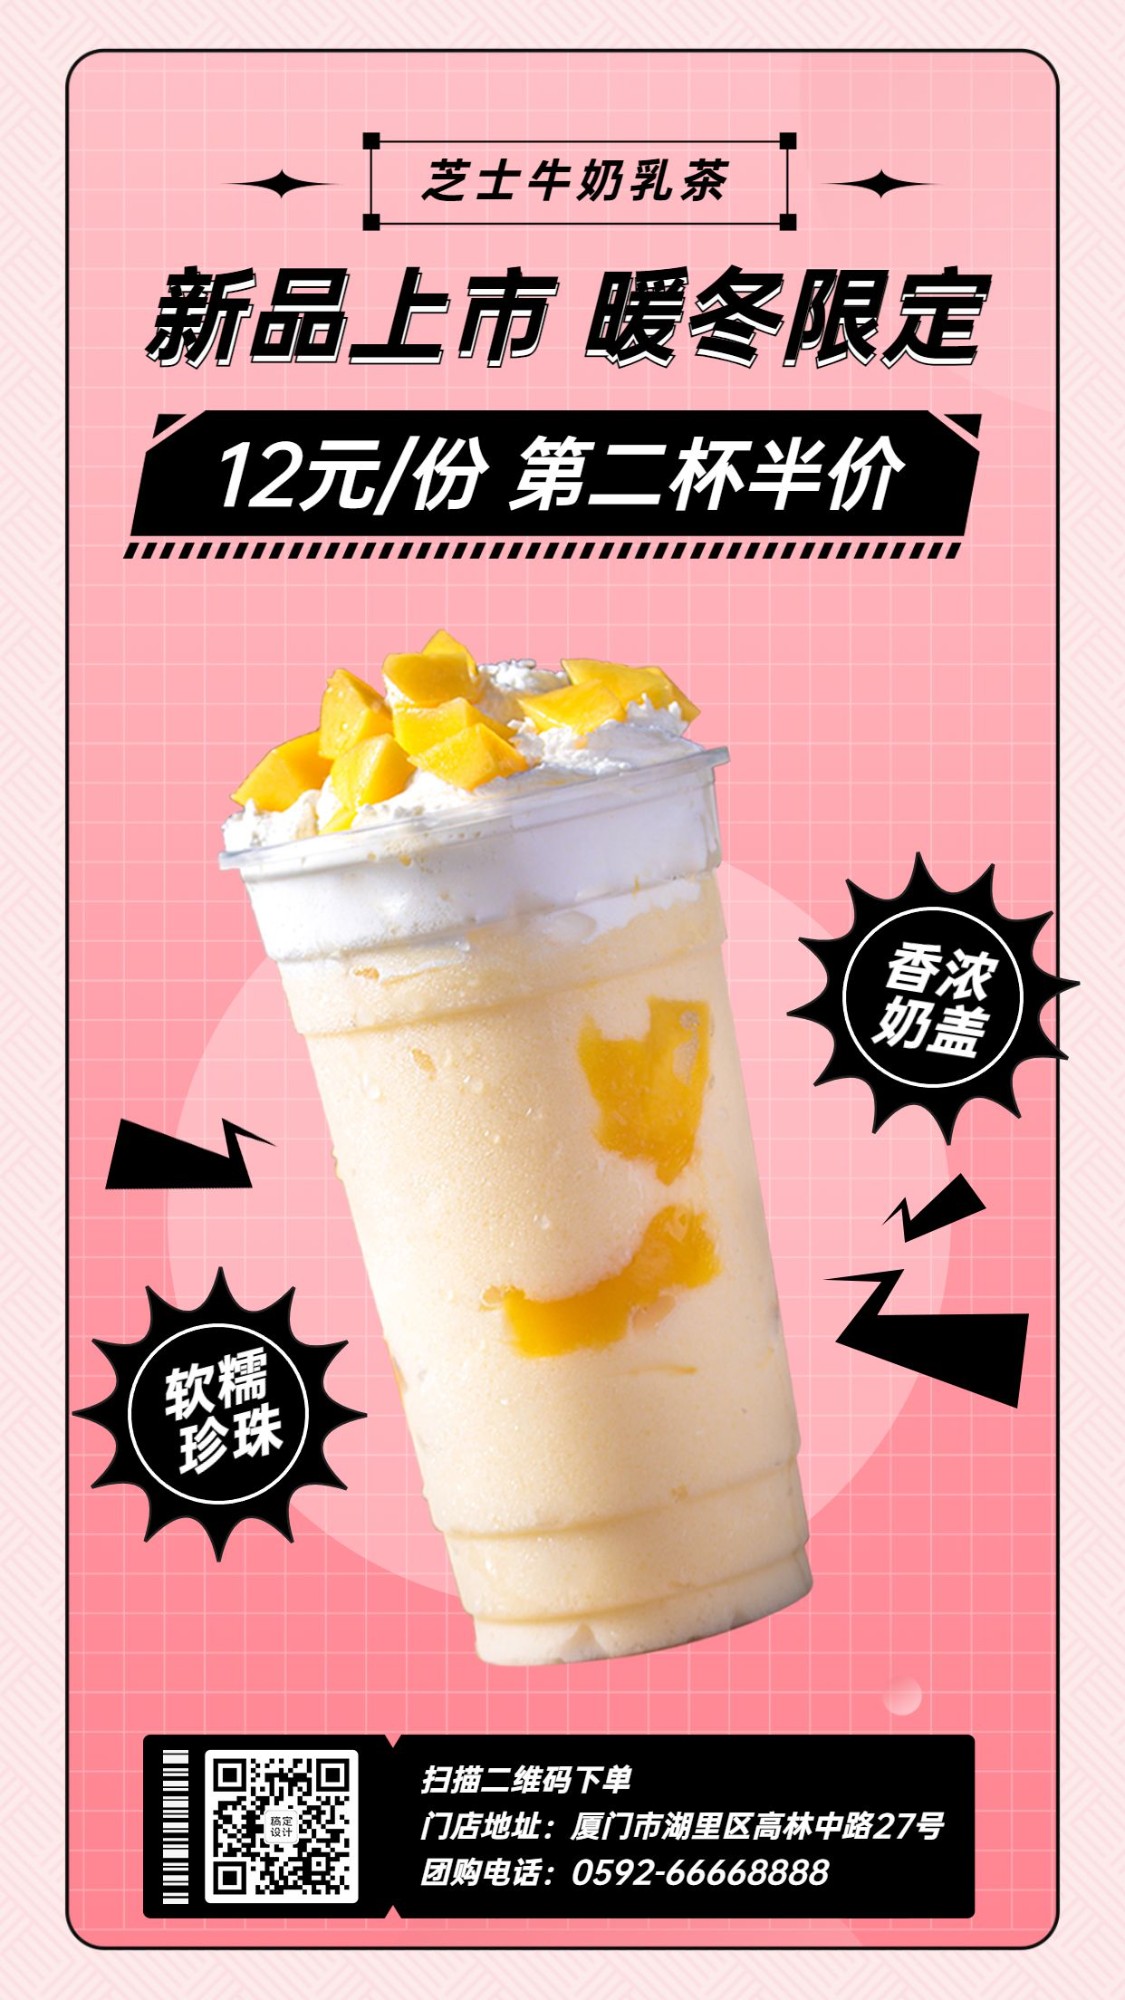 奶茶饮品新品上市文艺感手机海报